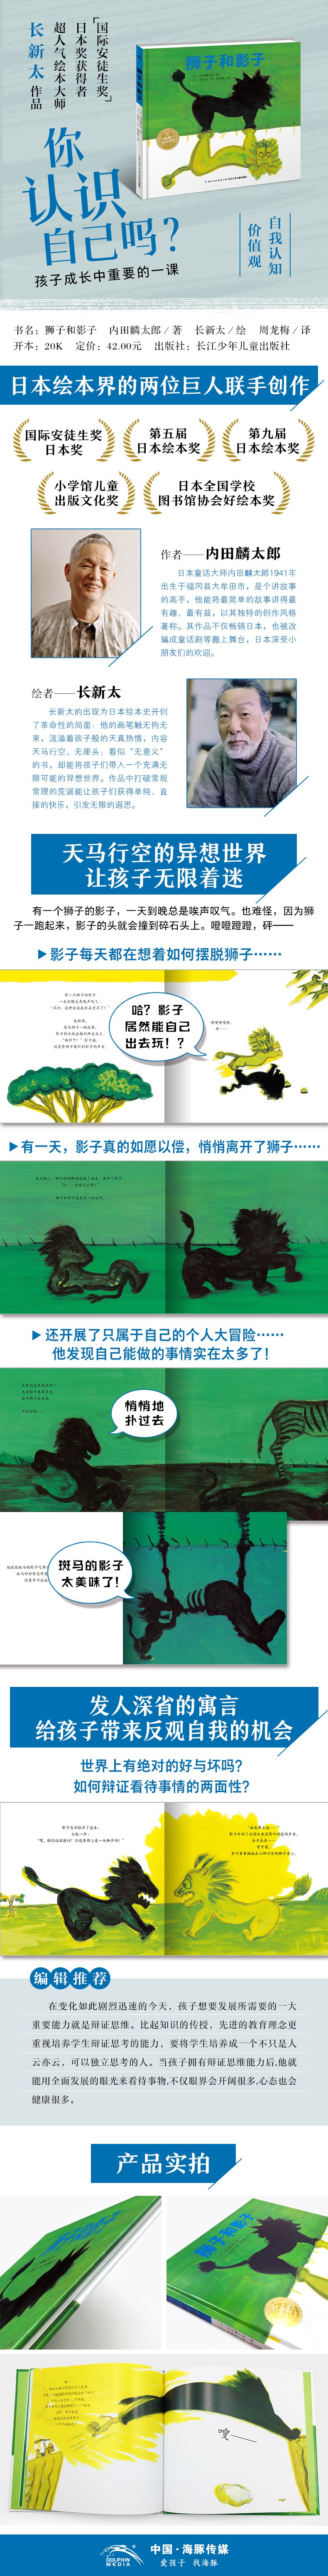 狮子和影子-详情页790.jpg